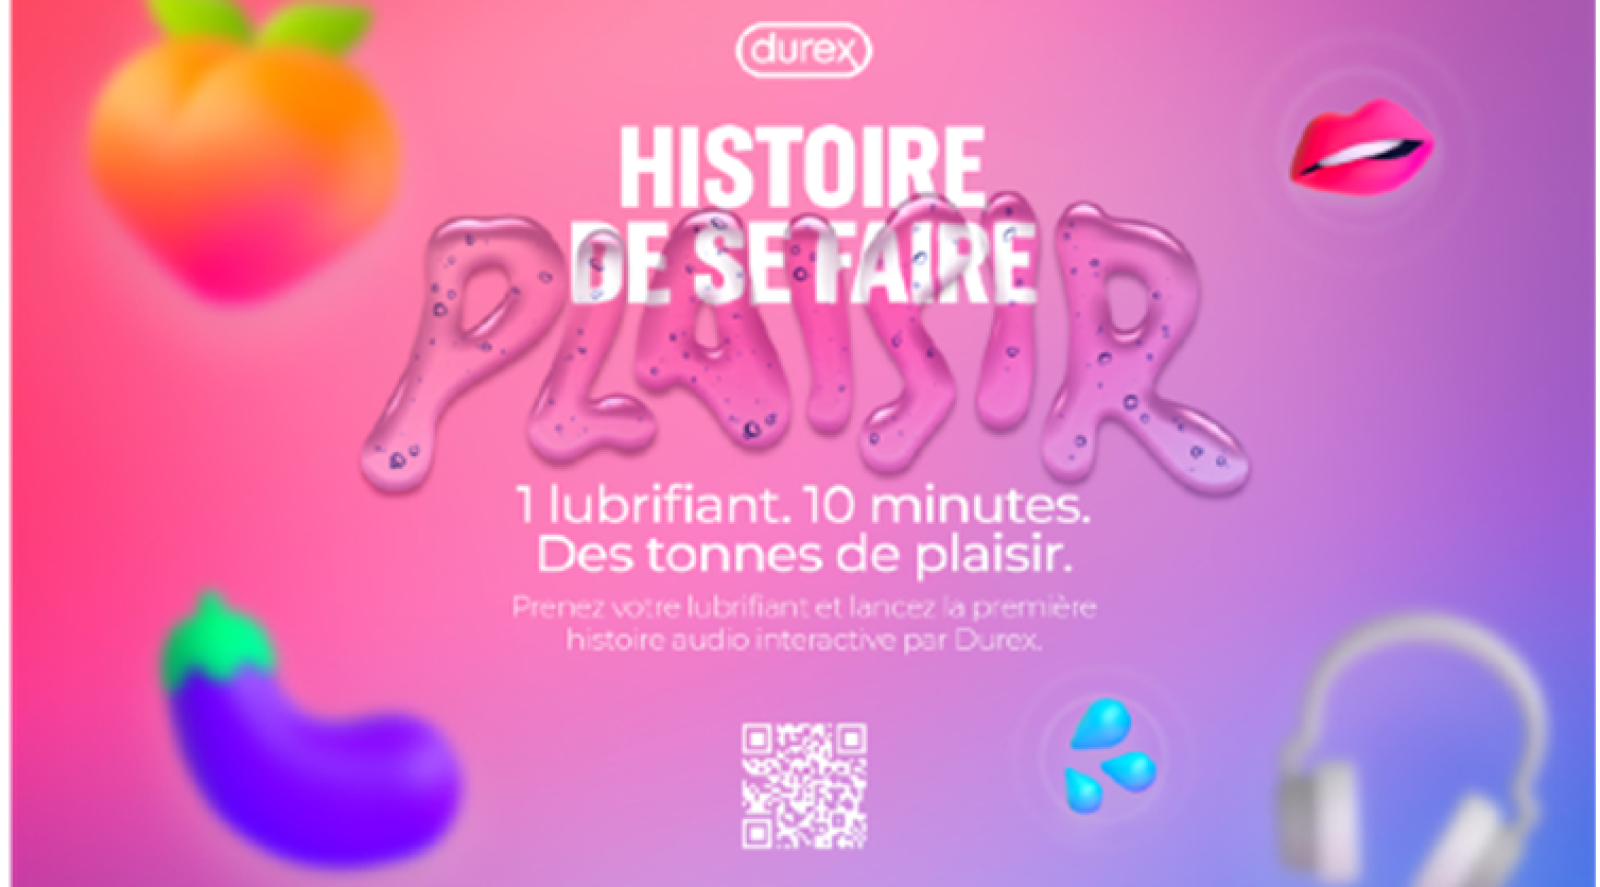 Durex Lance Le Podcast Histoire De Se Faire Plaisir Image Cb News 